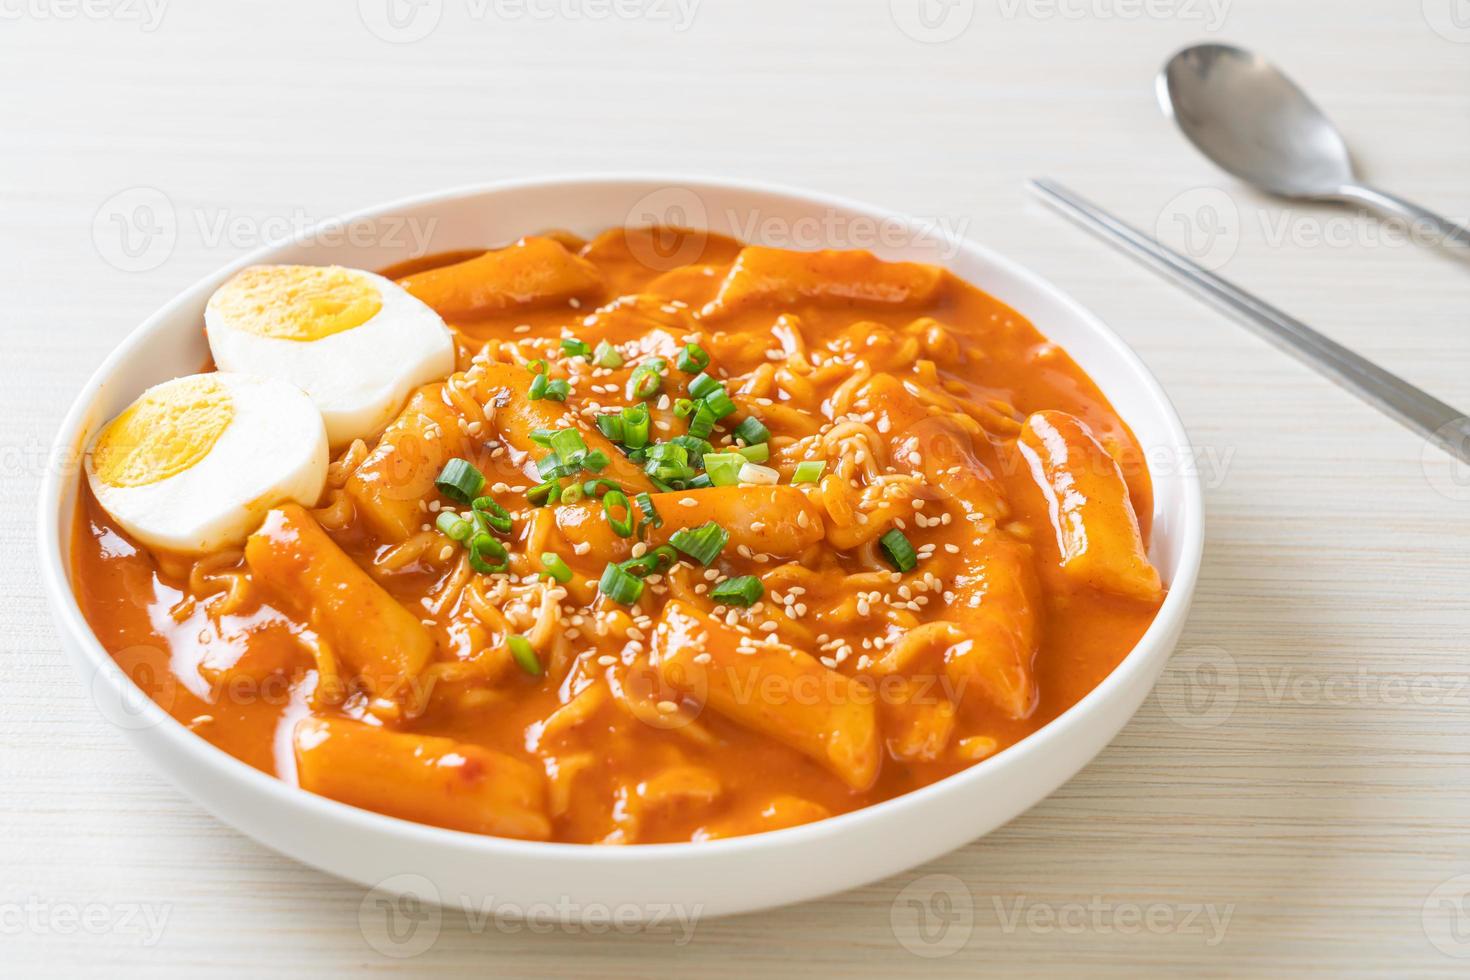 macarrão instantâneo coreano e tteokbokki em molho picante coreano - rabokki foto